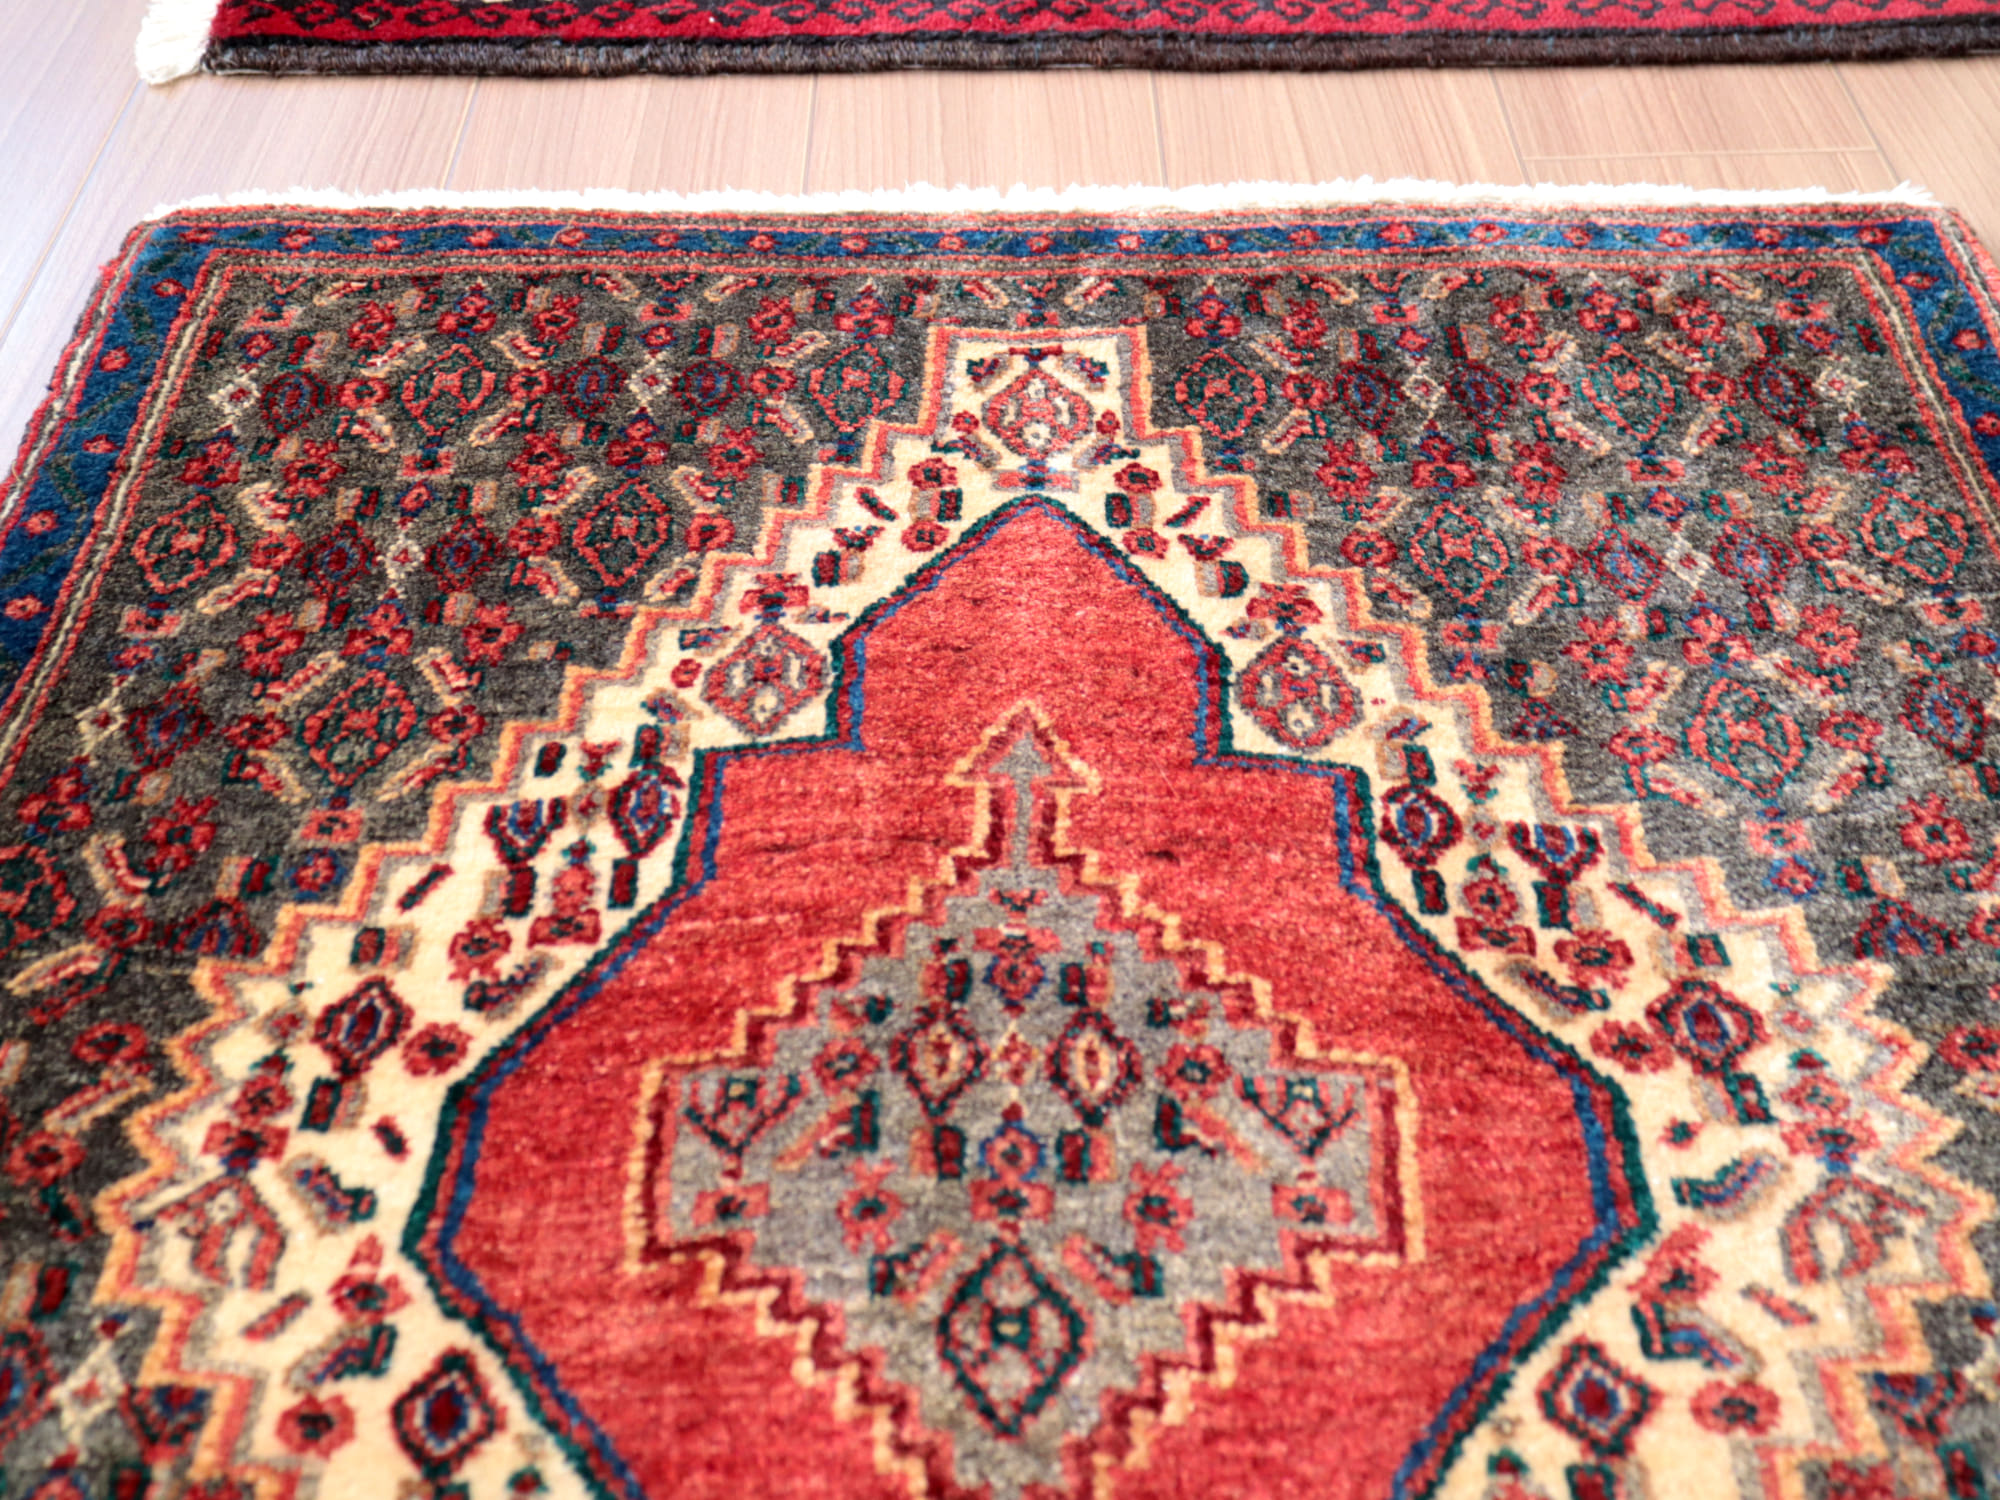 ペルシャじゅうたん　手織りラグ 92x75cm 正方形に近いサイズ　赤いメダリオン